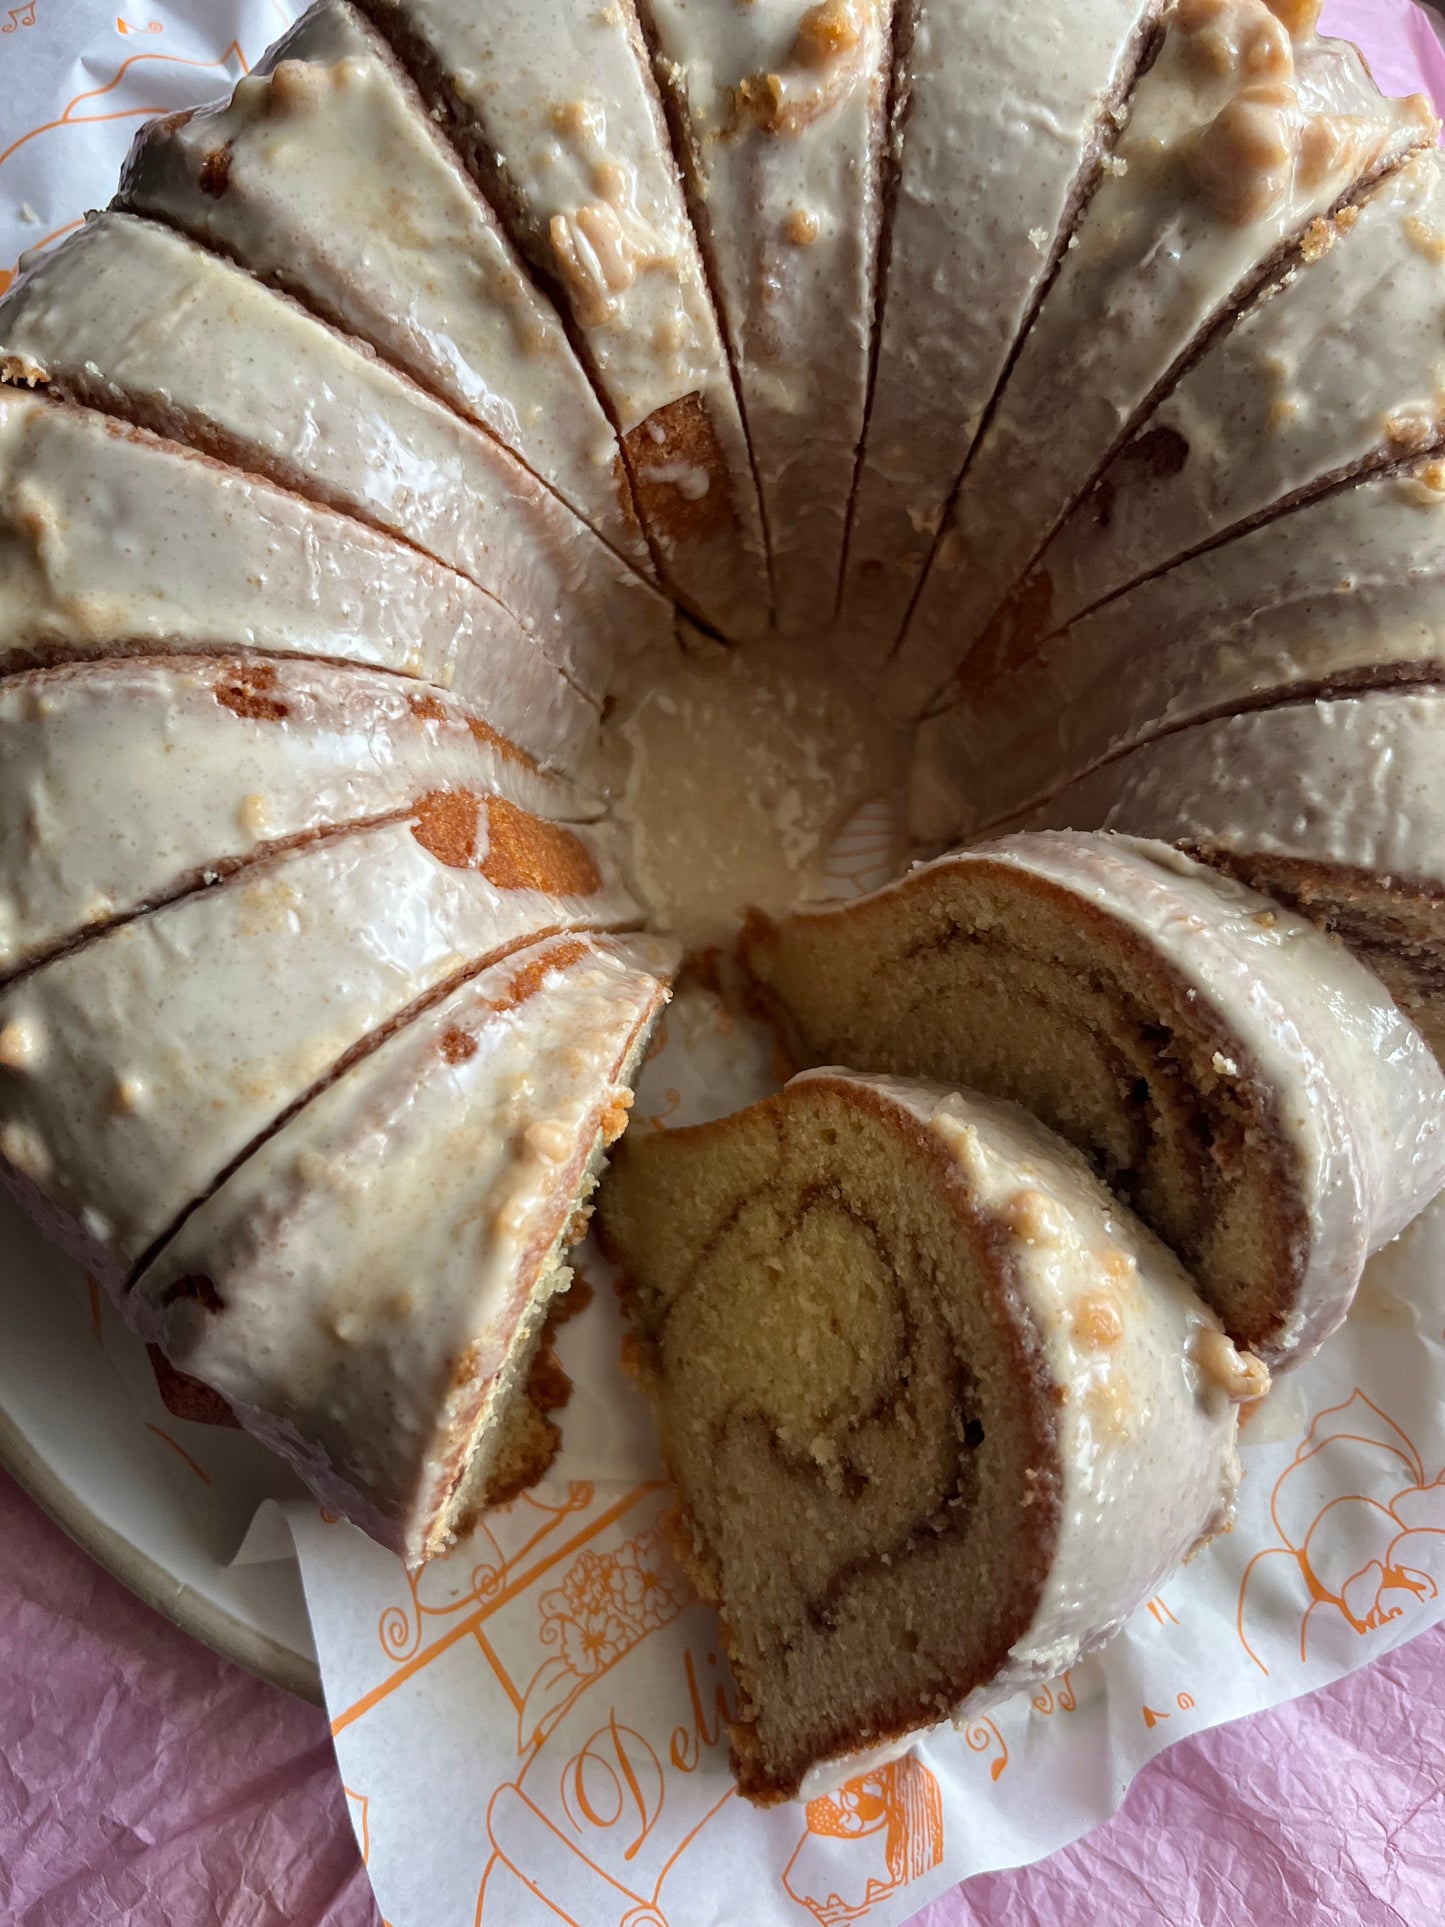 Gourmet “Main Squeeze” Bundt Cakes - 9 inch